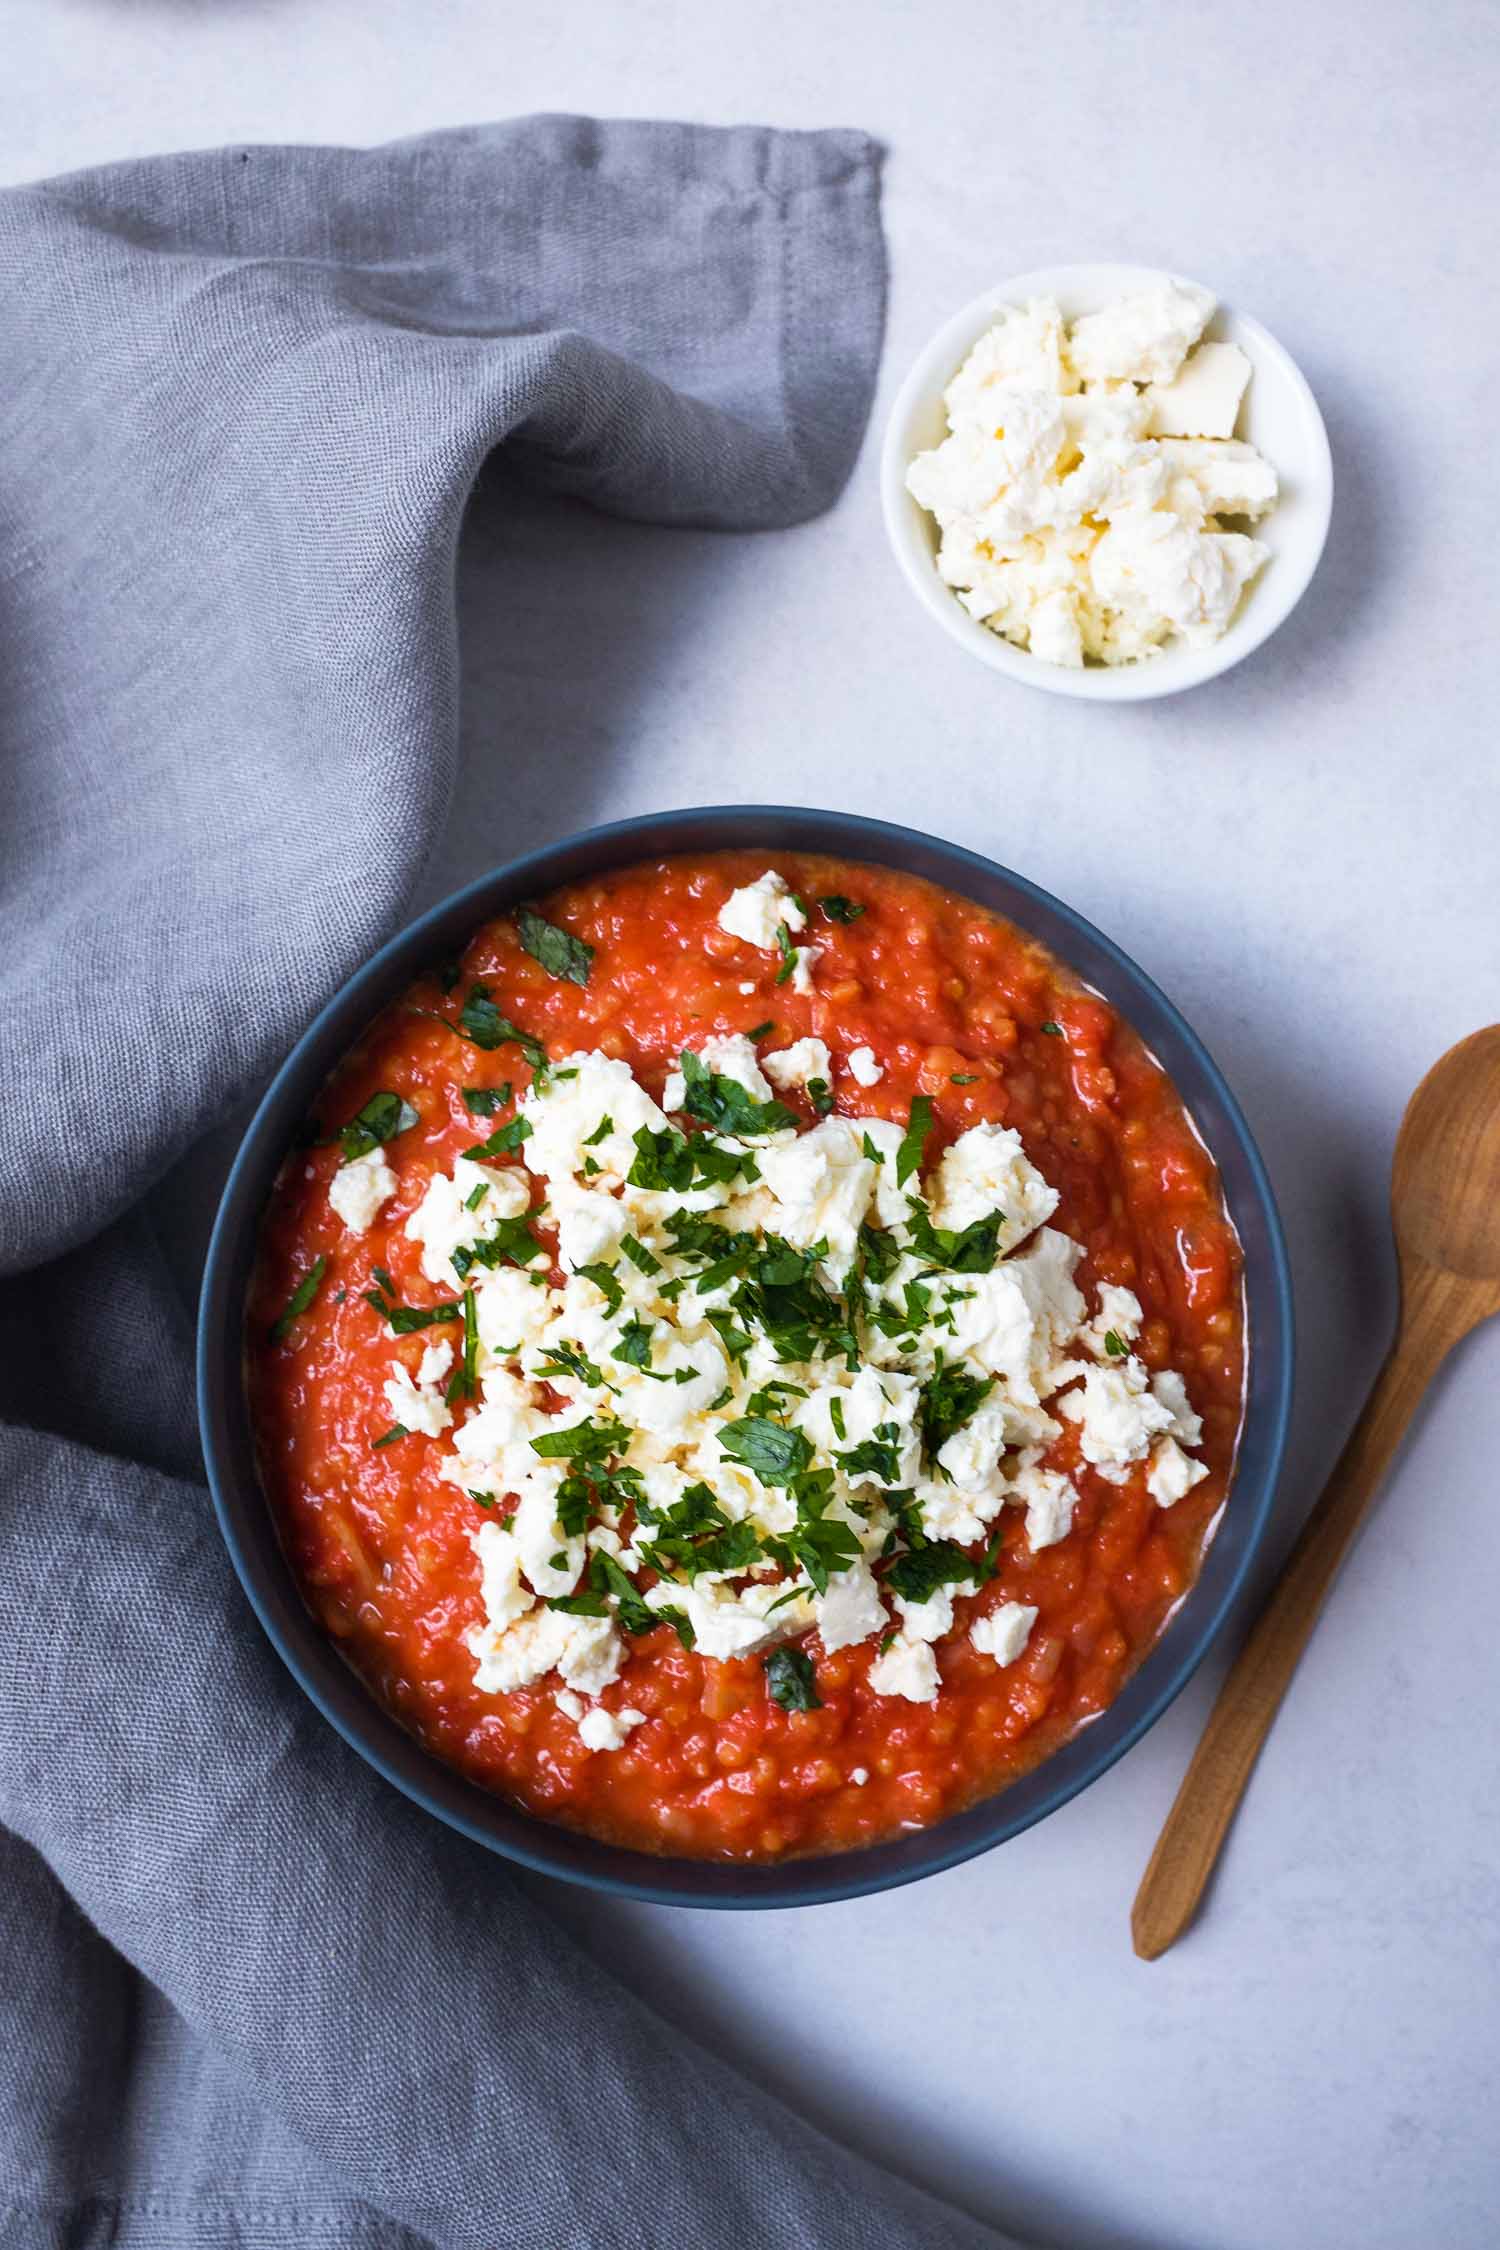 Lecker kann ganz einfach sein. Probiert mal diese cremige Tomaten-Feta-Hirse Suppe mit Petersilie. Simpel in der Zubereitung und köstlich im Geschmack.